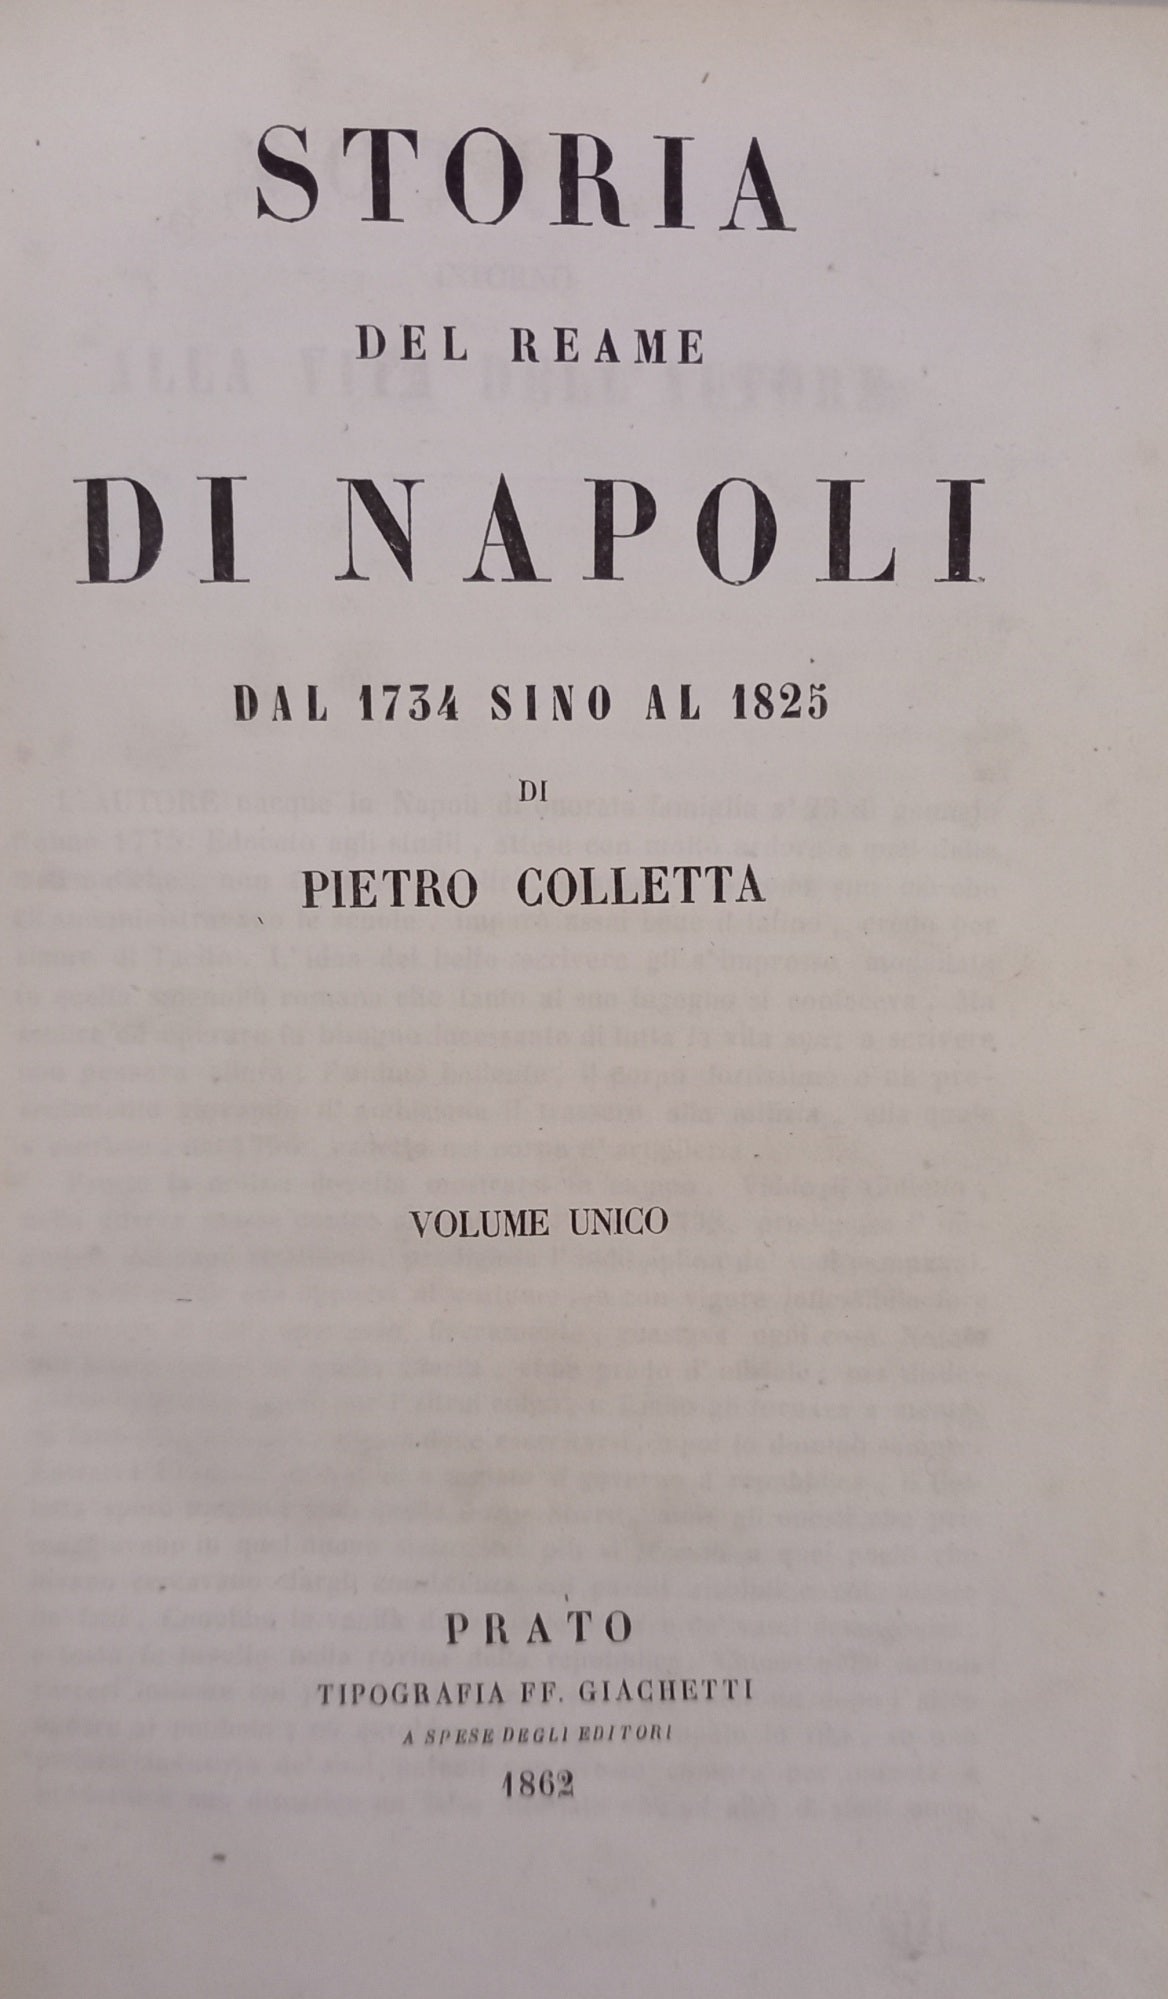 STORIA DEL REAME DI NAPOLI dal 1734 sino al1825 (volume unico)